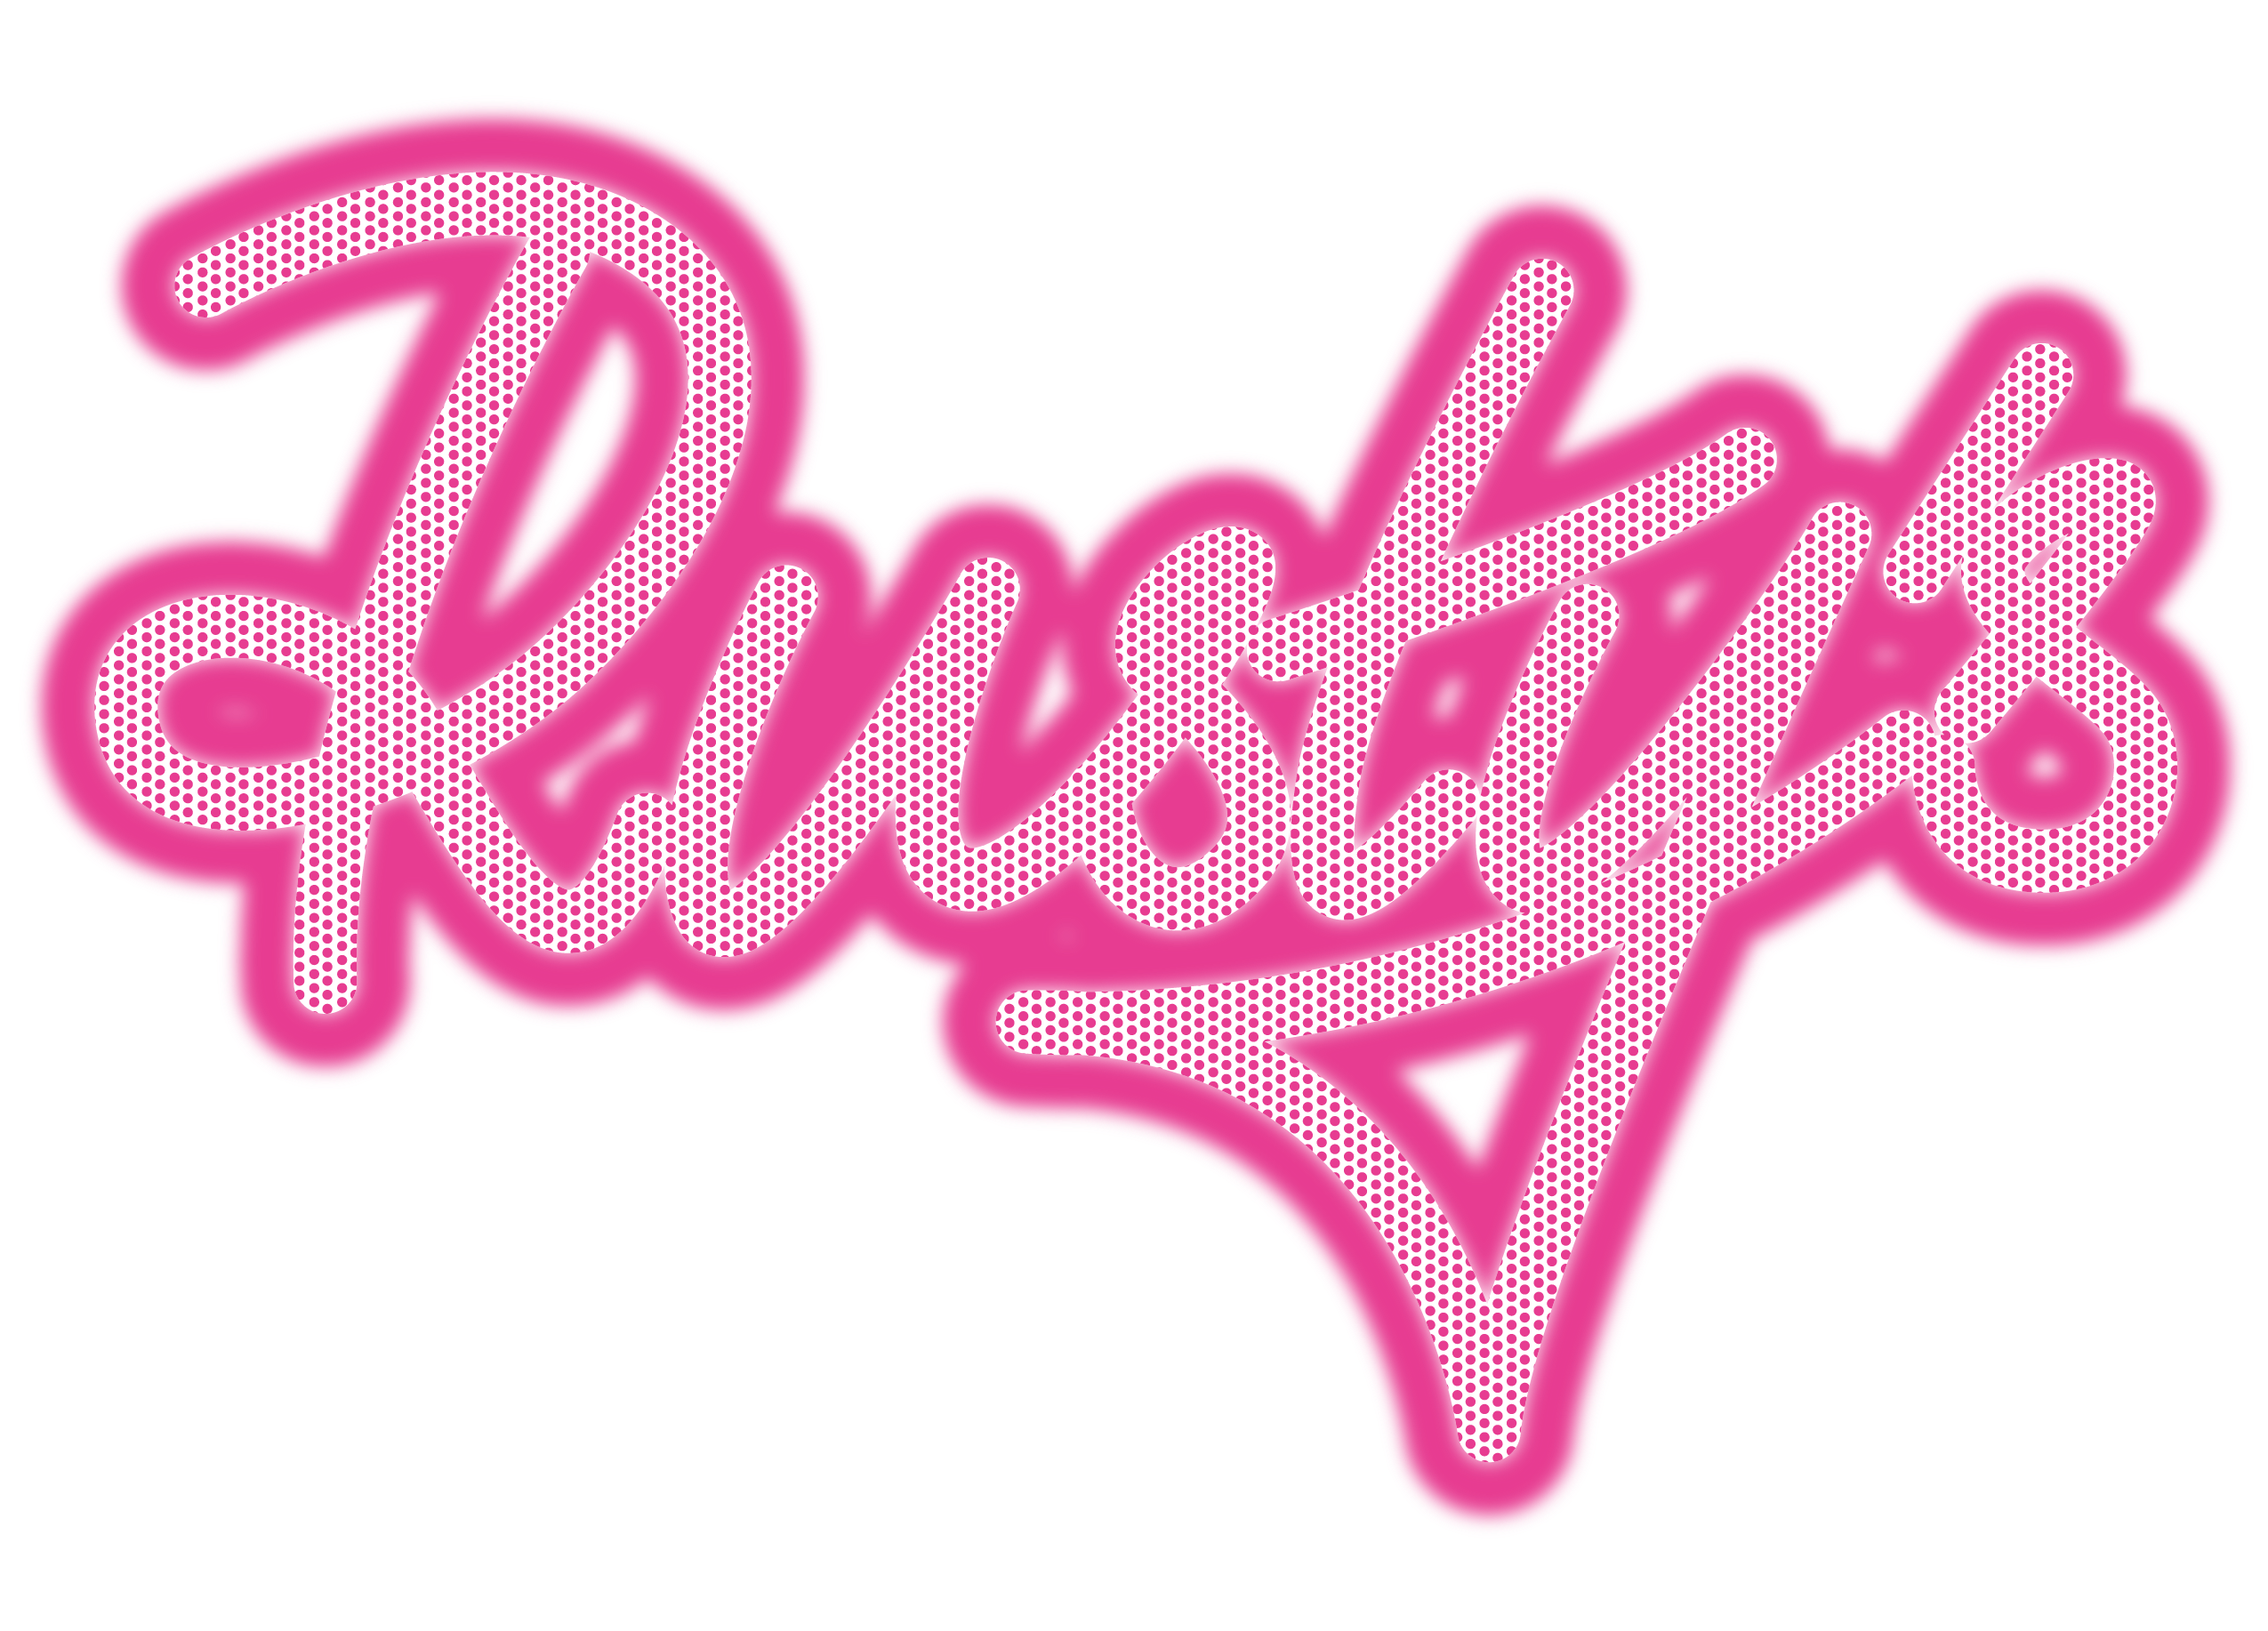 Rusty's